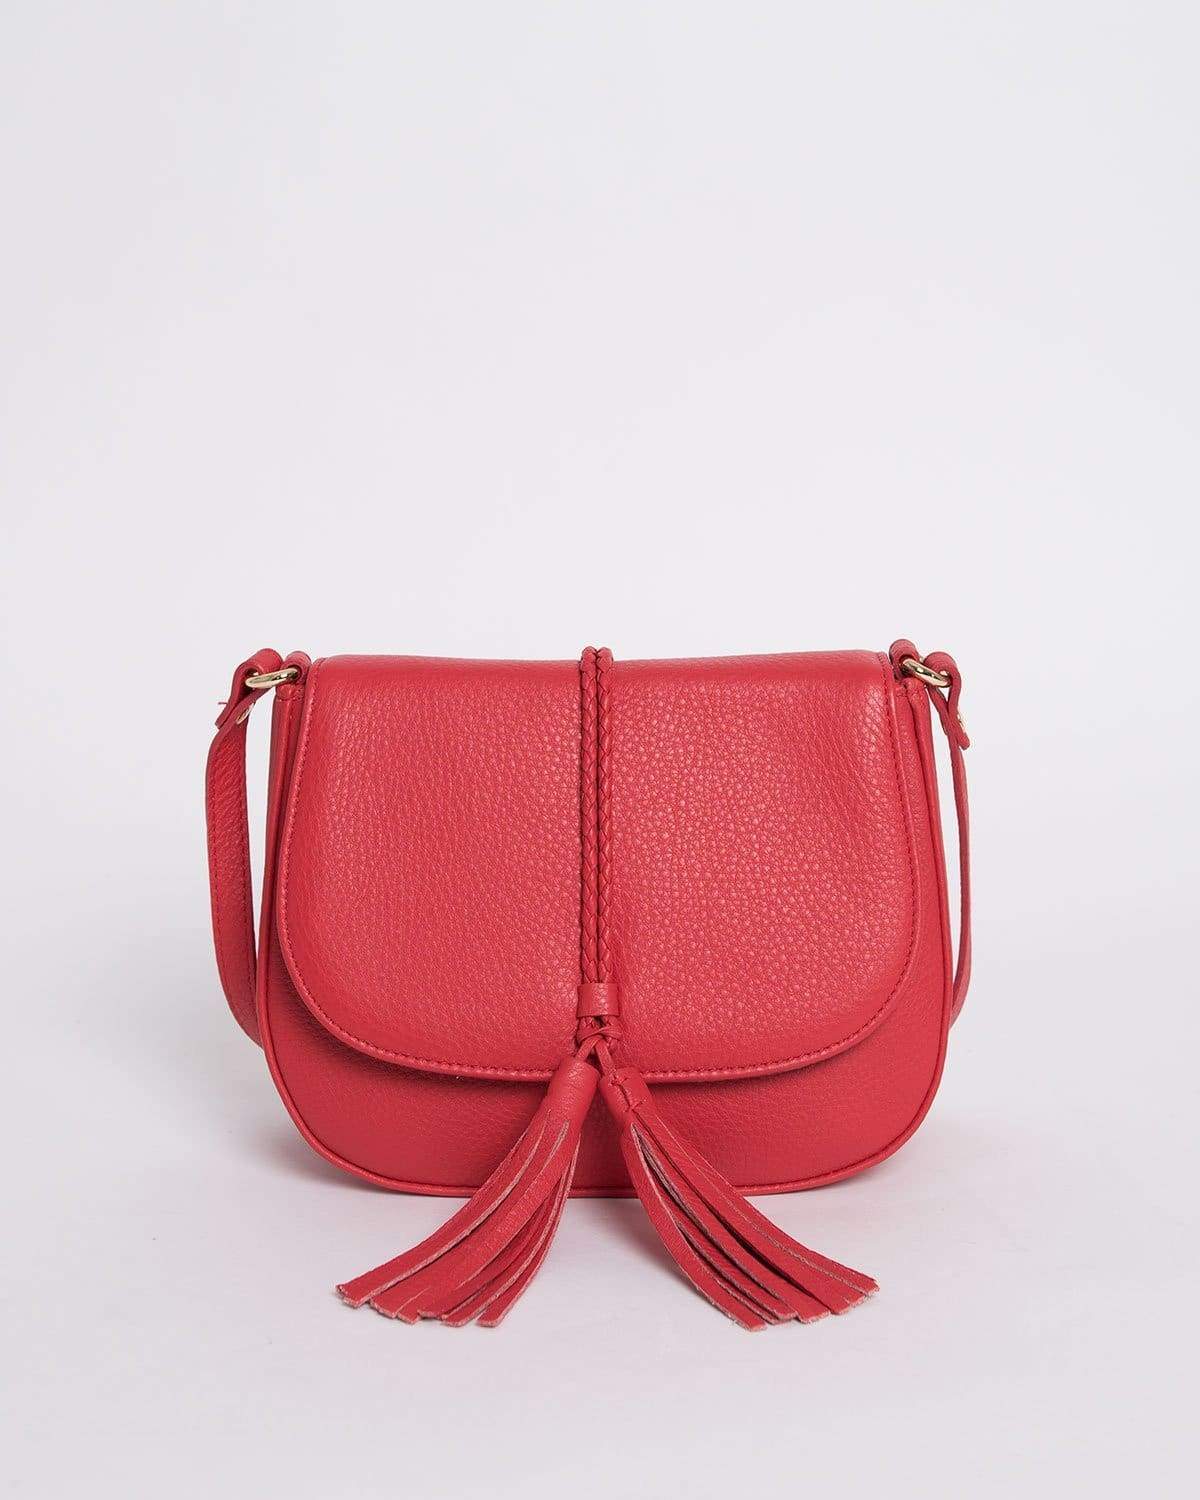 Carli - Red Bags | Pietro NYC